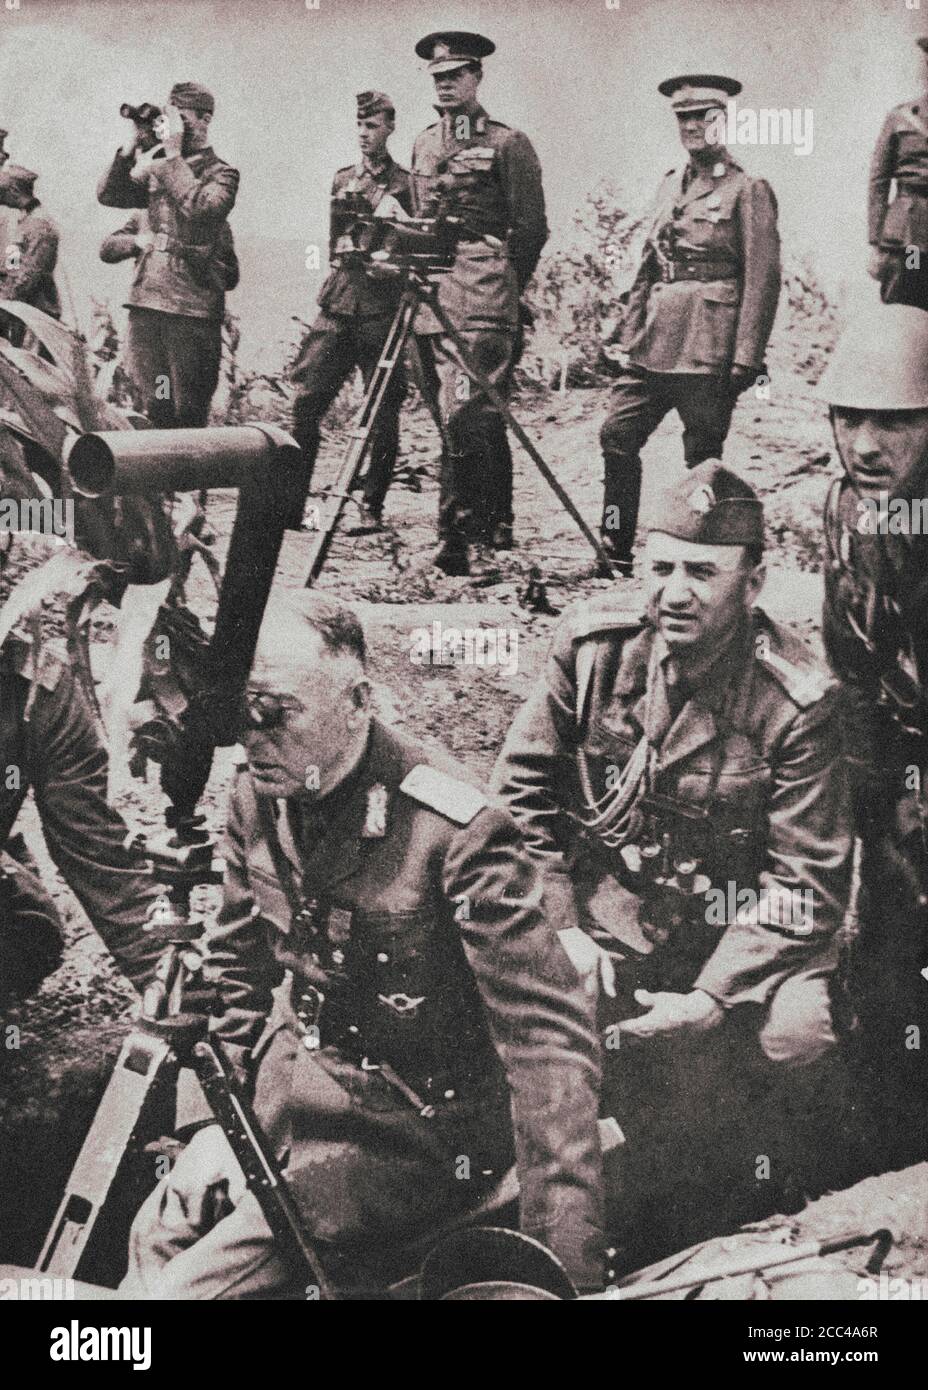 Re di Romania Mihai i (al centro, nella seconda fila) guarda il corso delle esercitazioni militari dell'esercito rumeno contro le truppe sovietiche. Poll Foto Stock